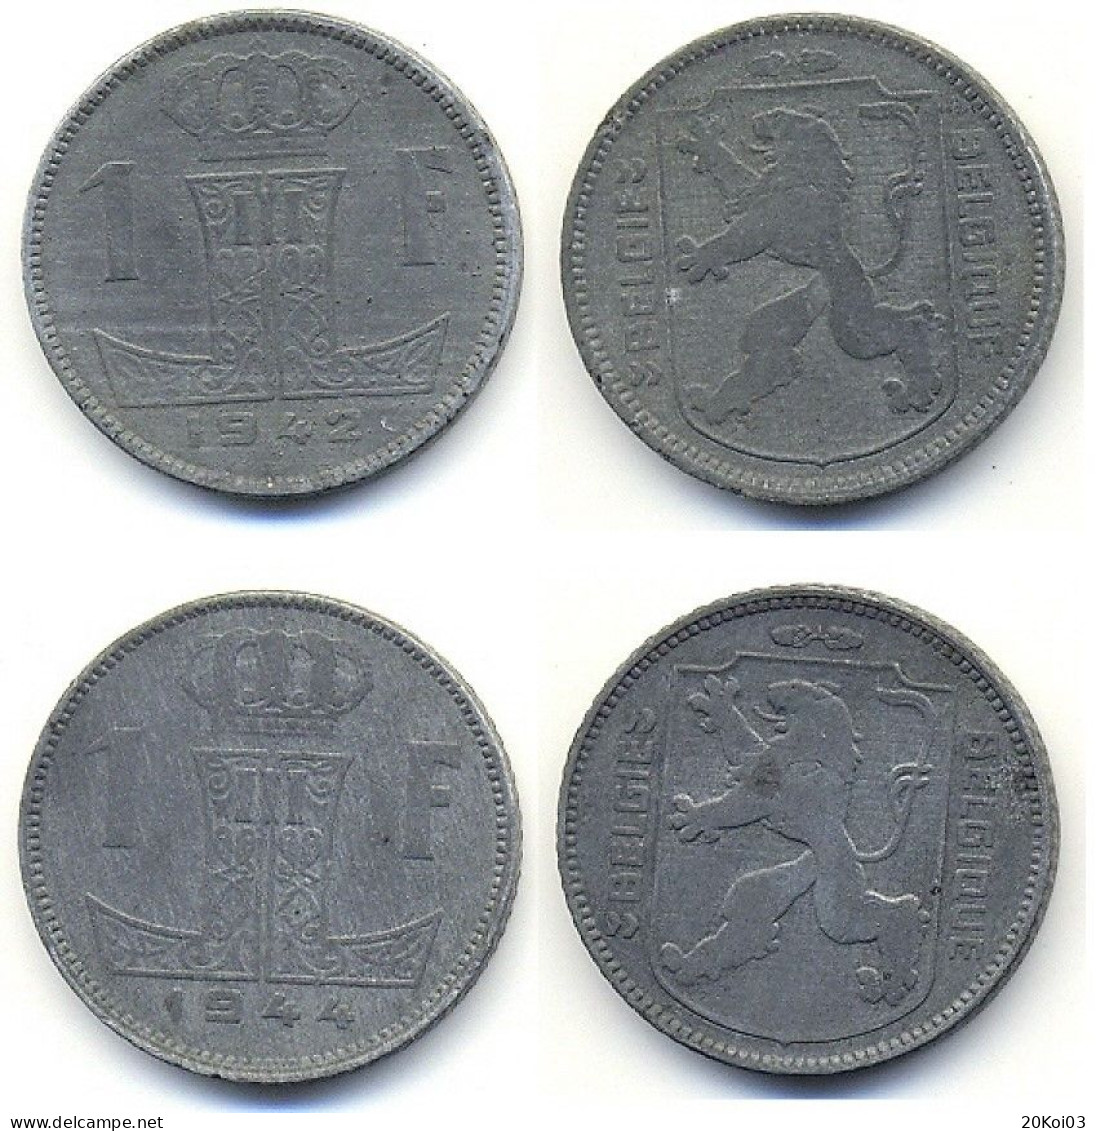 1F 1942 Belgique Belgie Et 1F 1944 Belgique Belgie (FRANC)_Les 2 Monnaies Sont étés Utilisées - 1 Frank